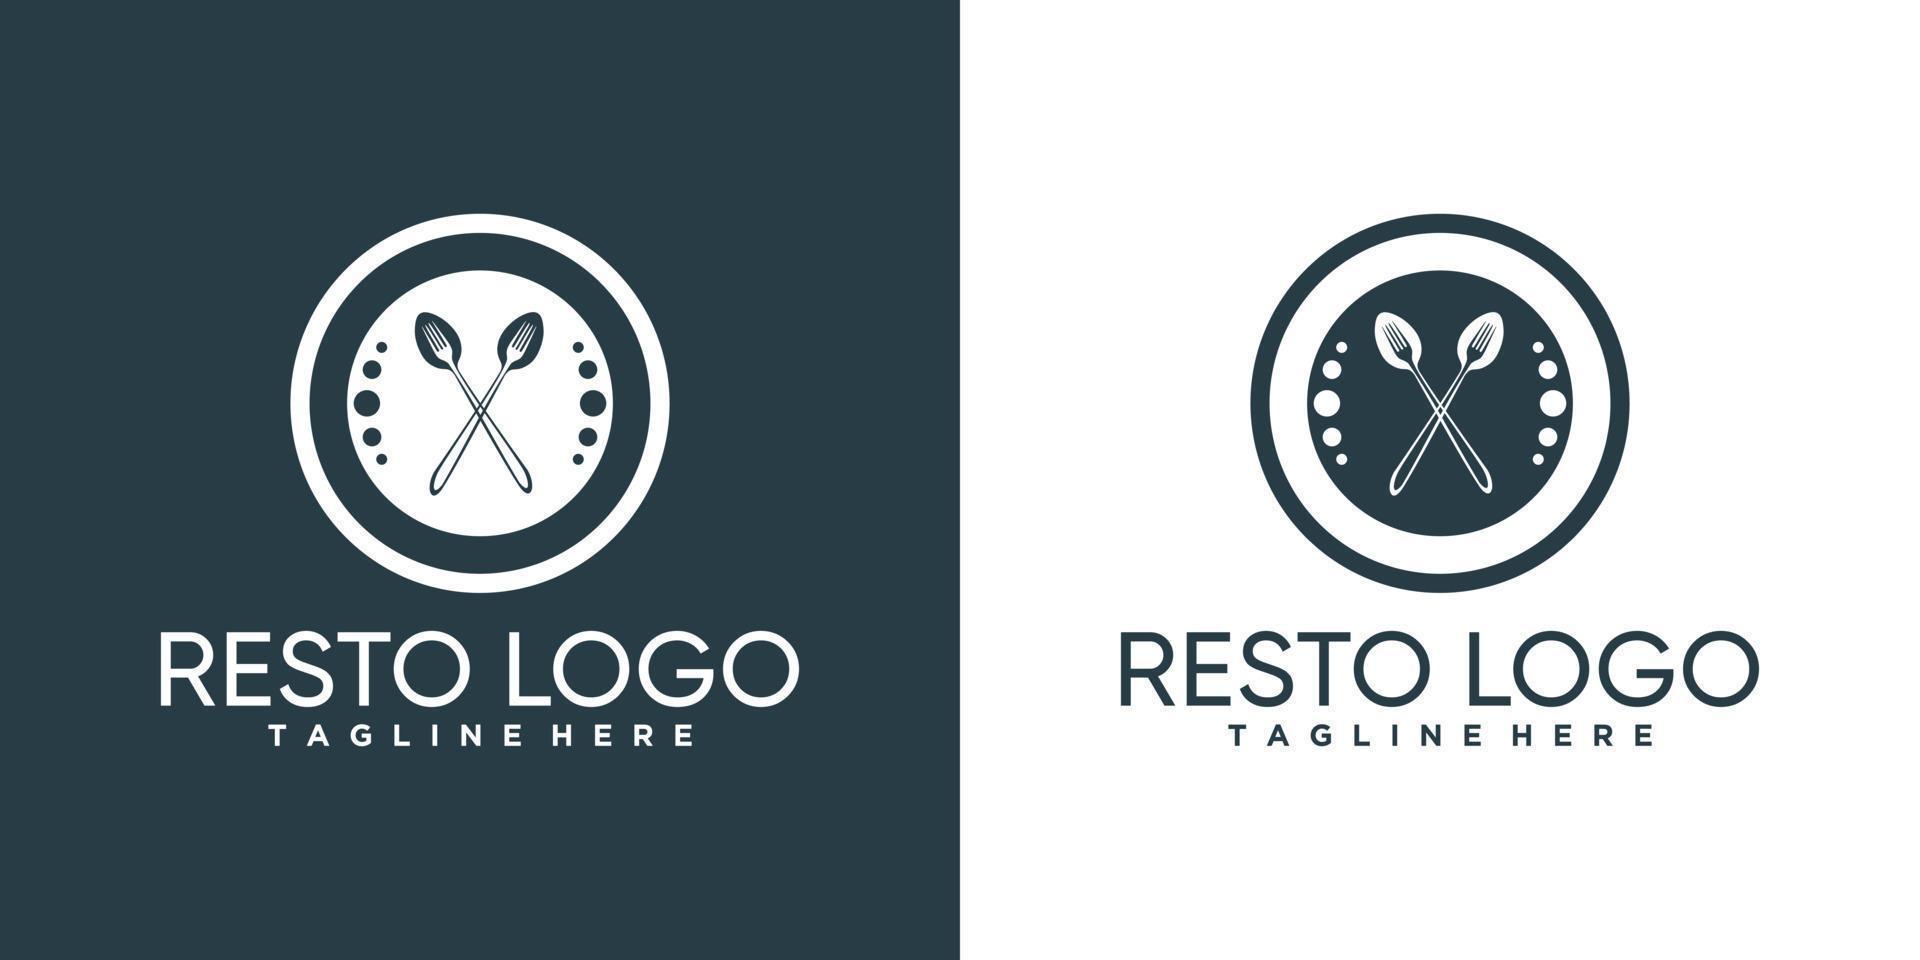 création de logo de resto alimentaire pour entreprise ou personnel avec élément créatif vecteur